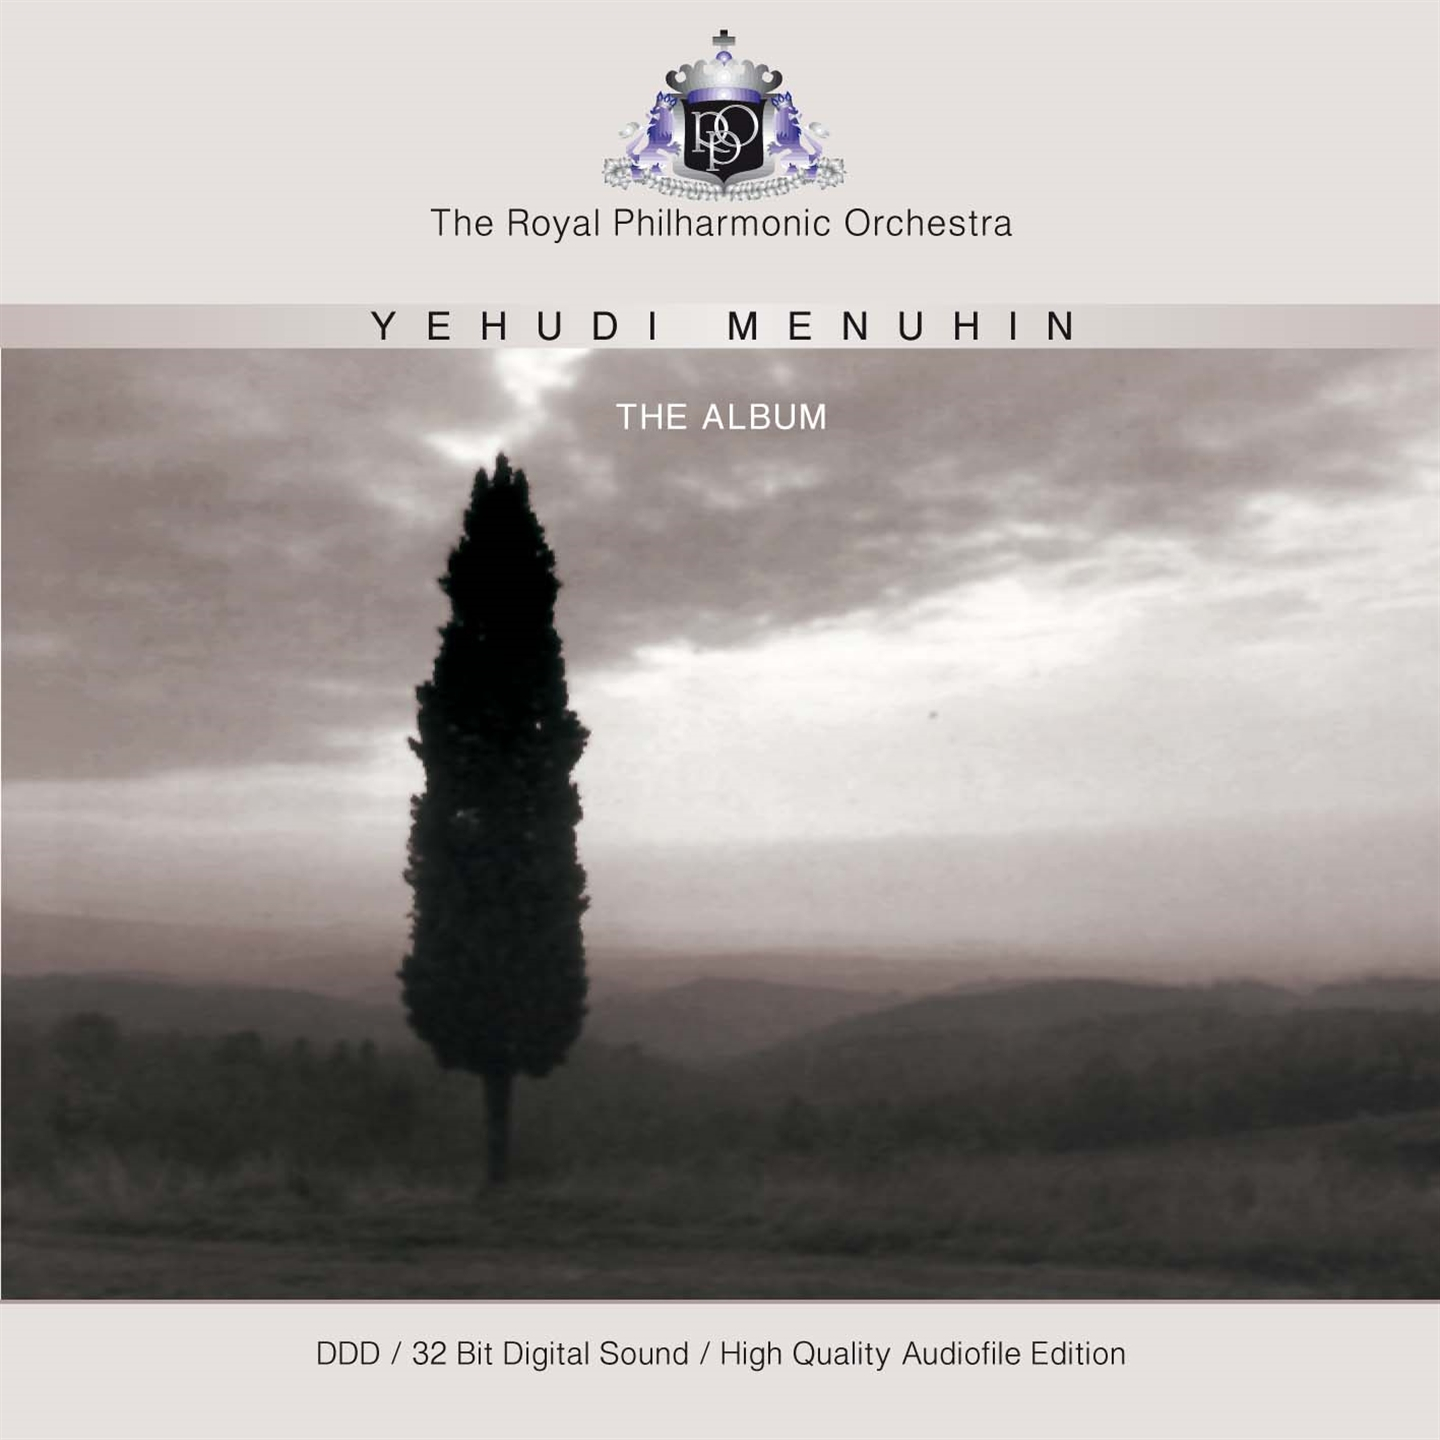 YEHUDI MENUHIN: THE ALBUM